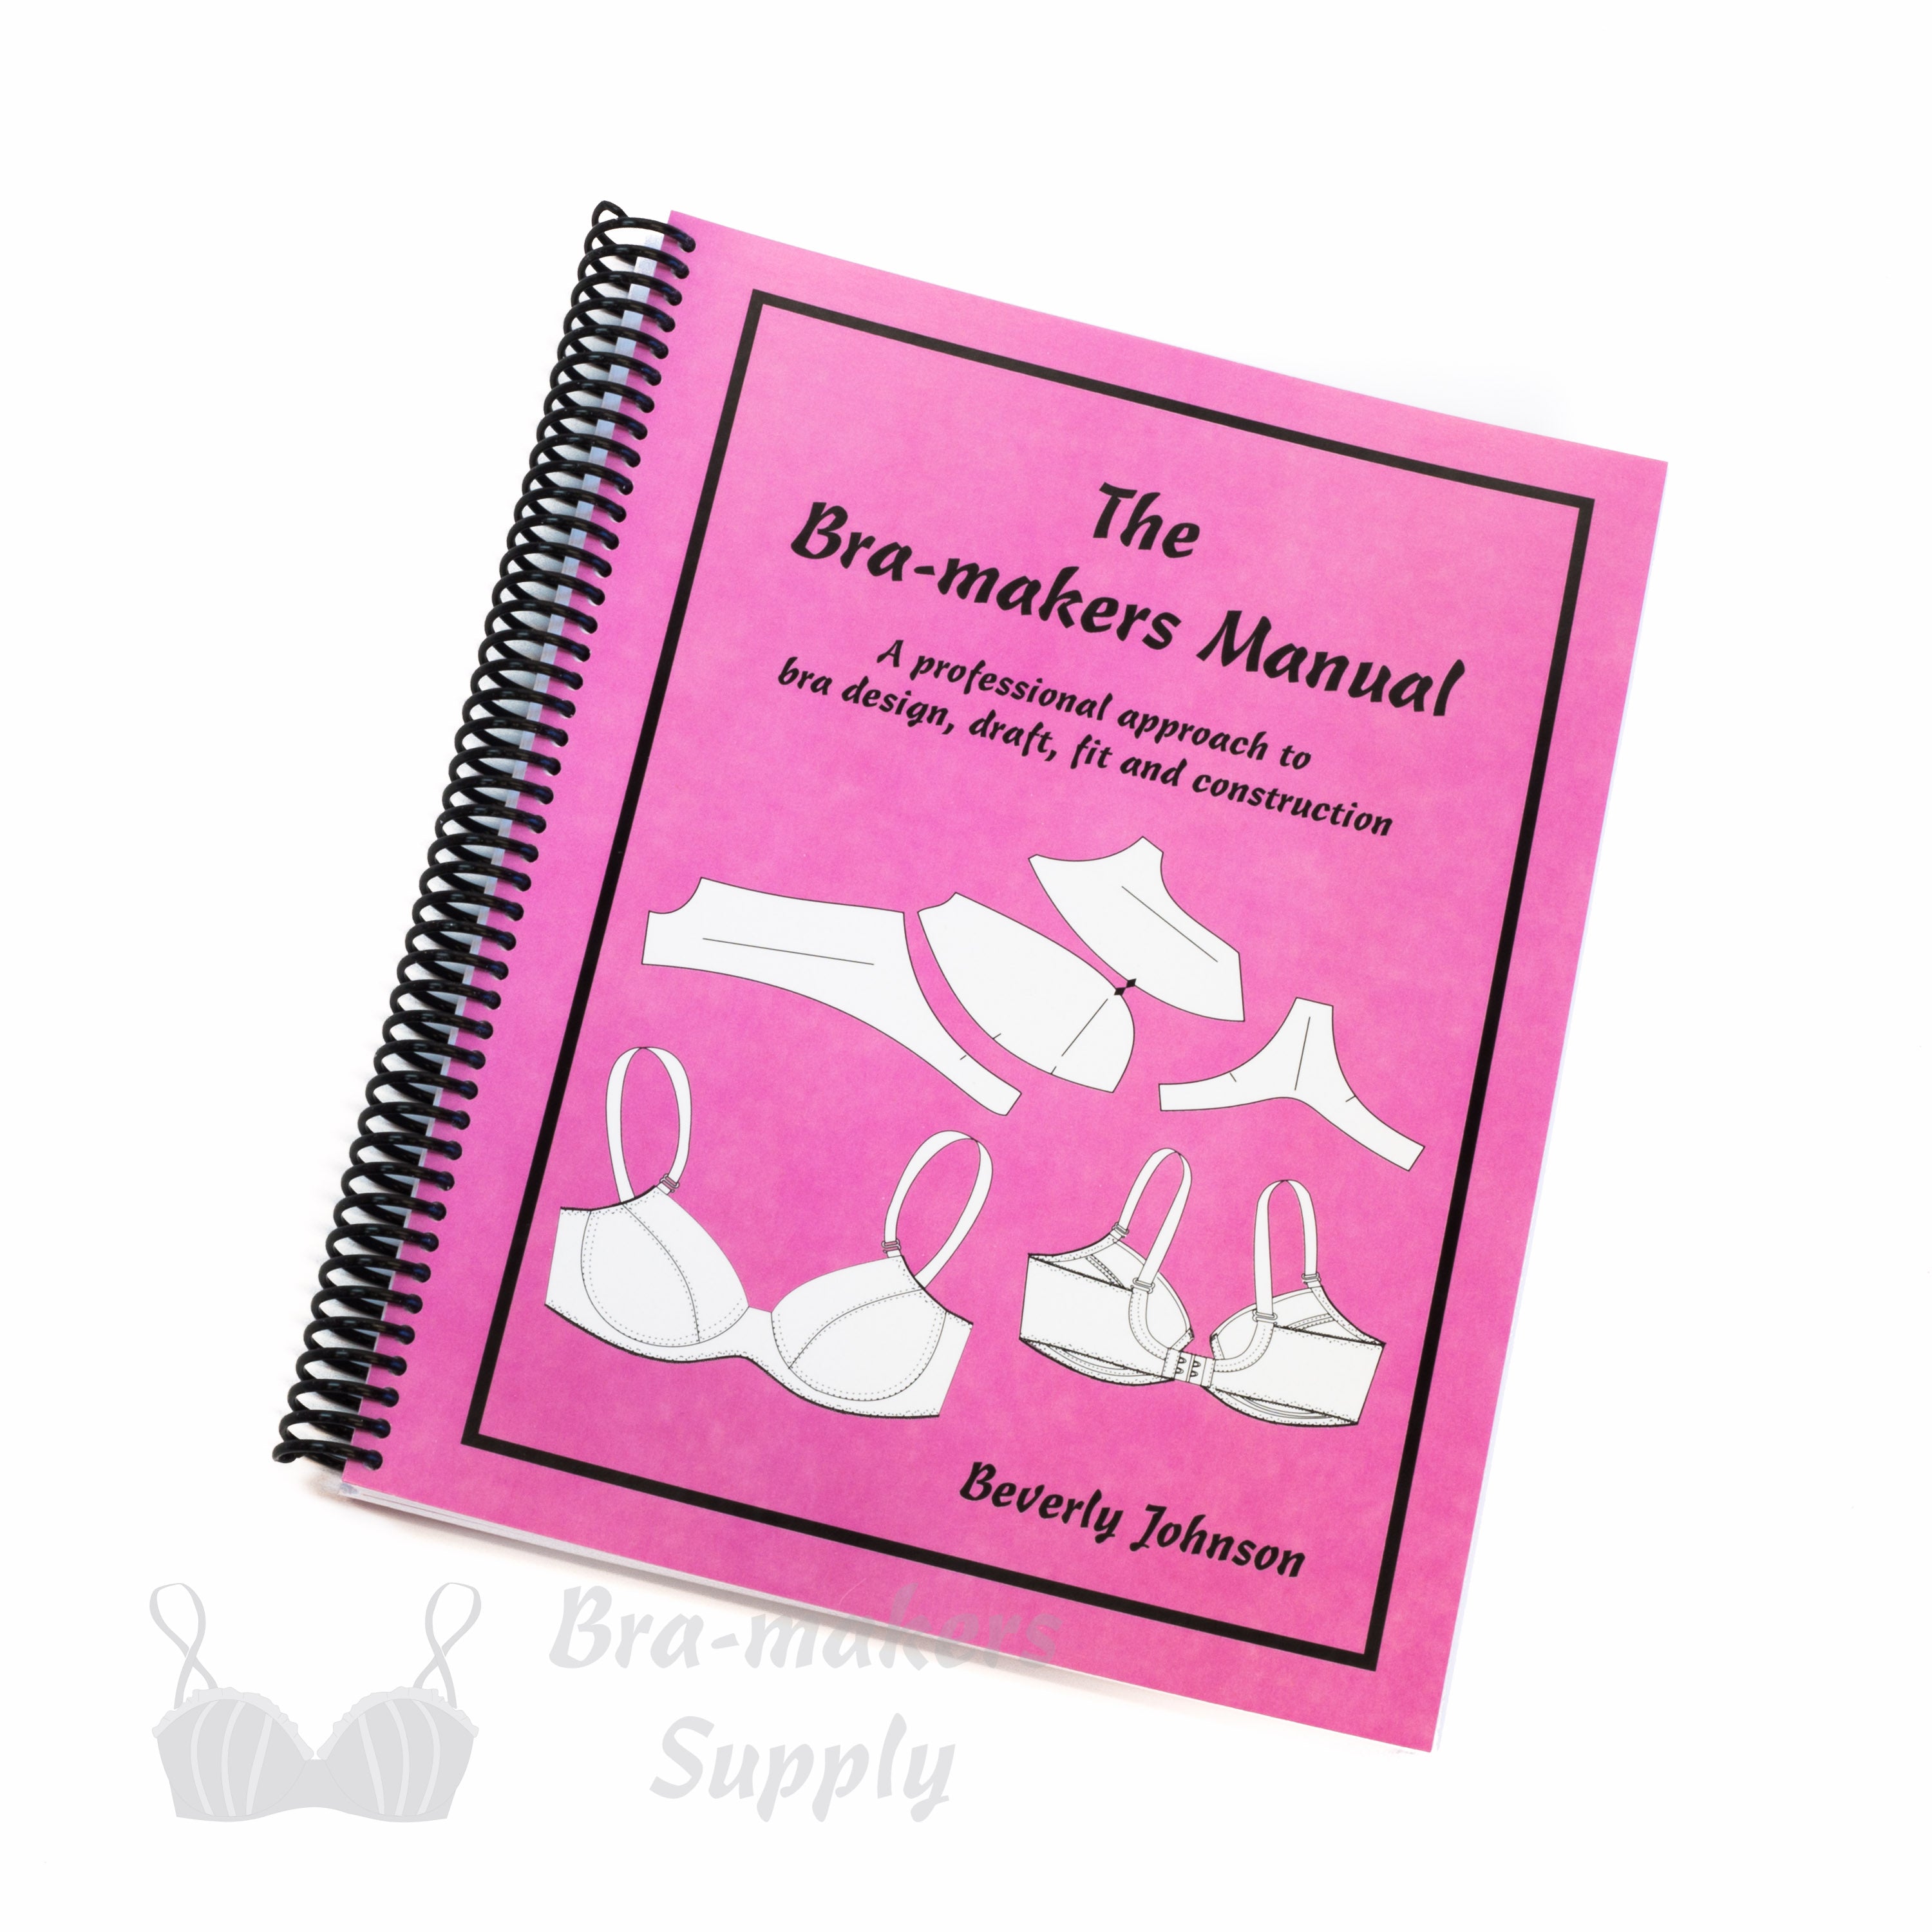 Bra-makers Manual Vol. 1 